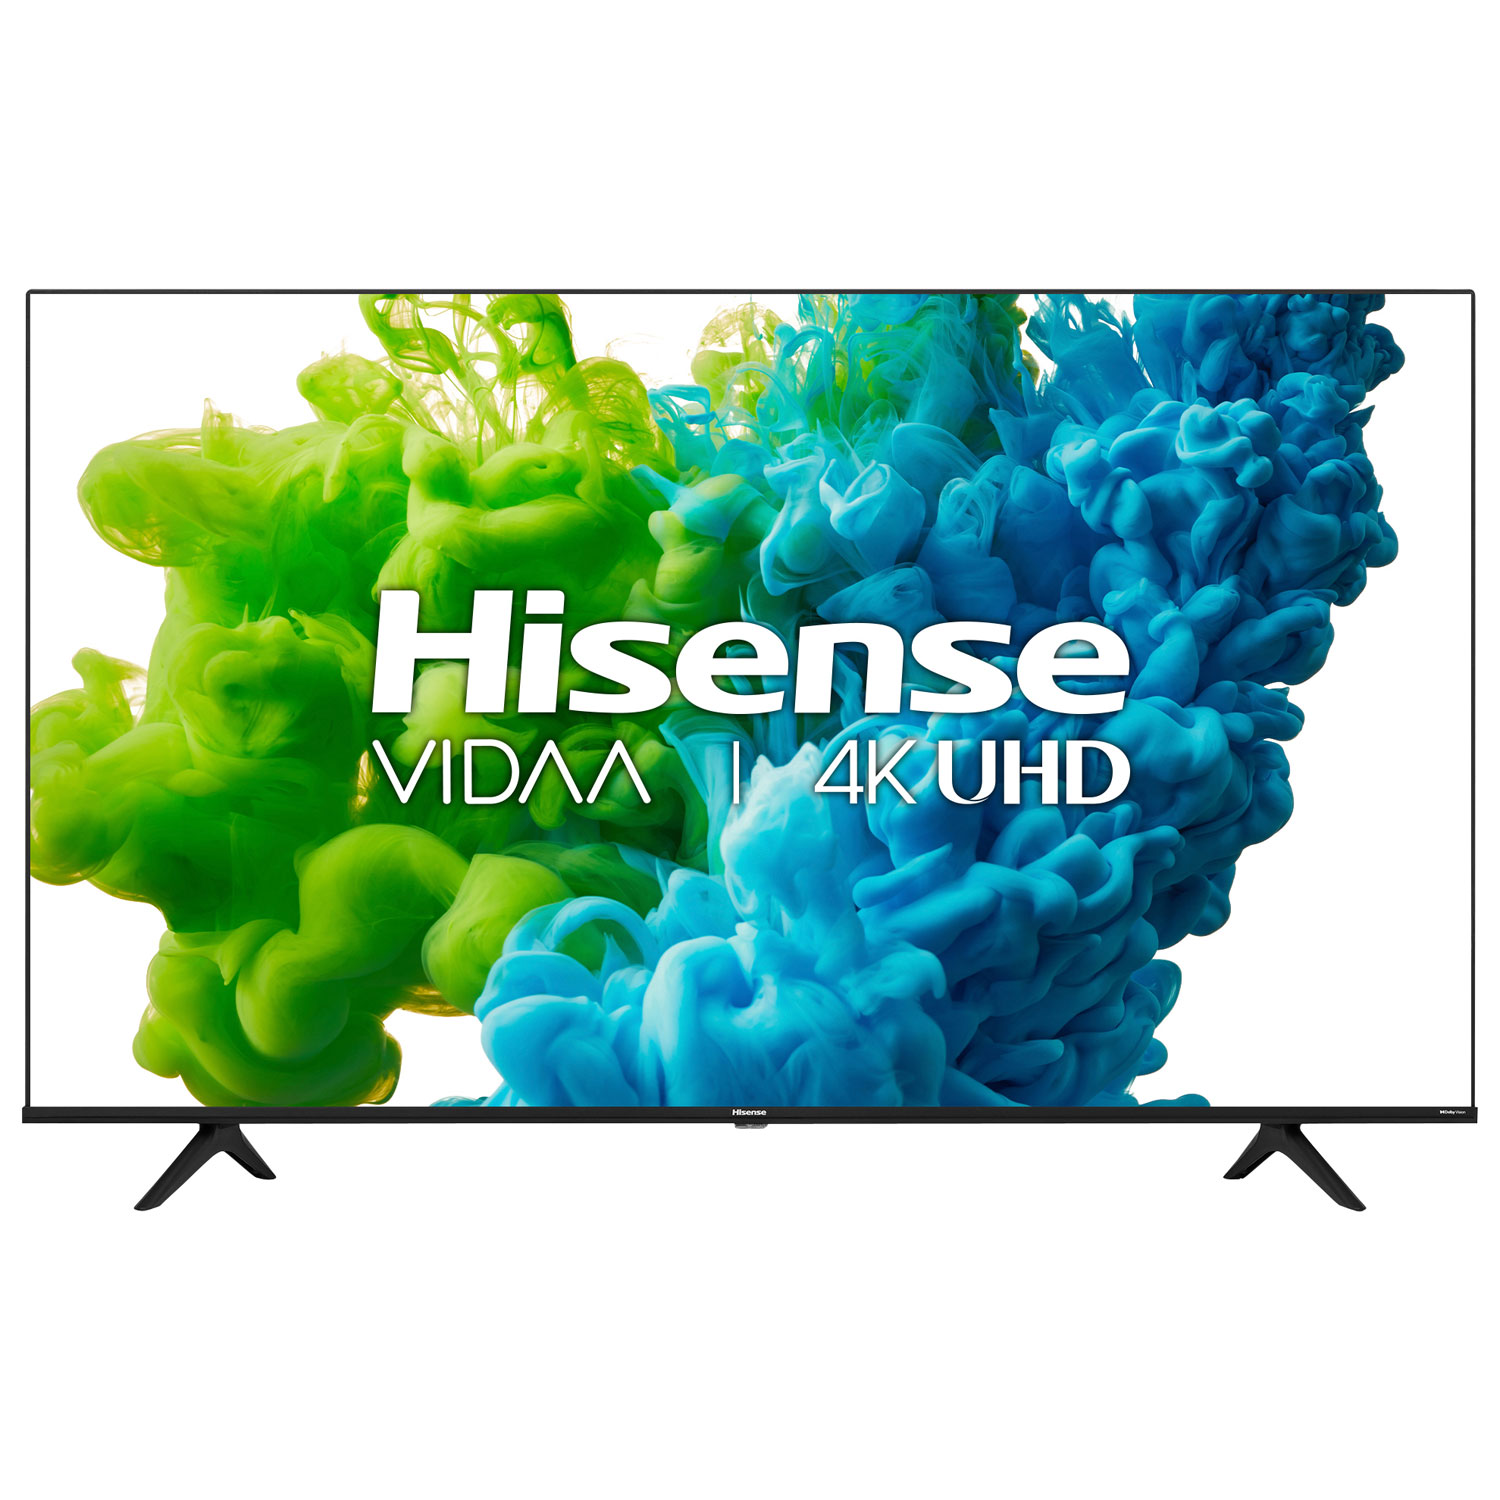 Hisense 50" 4K UHD HDR LED Vidaa Smart TV (50A6GV) - 2021